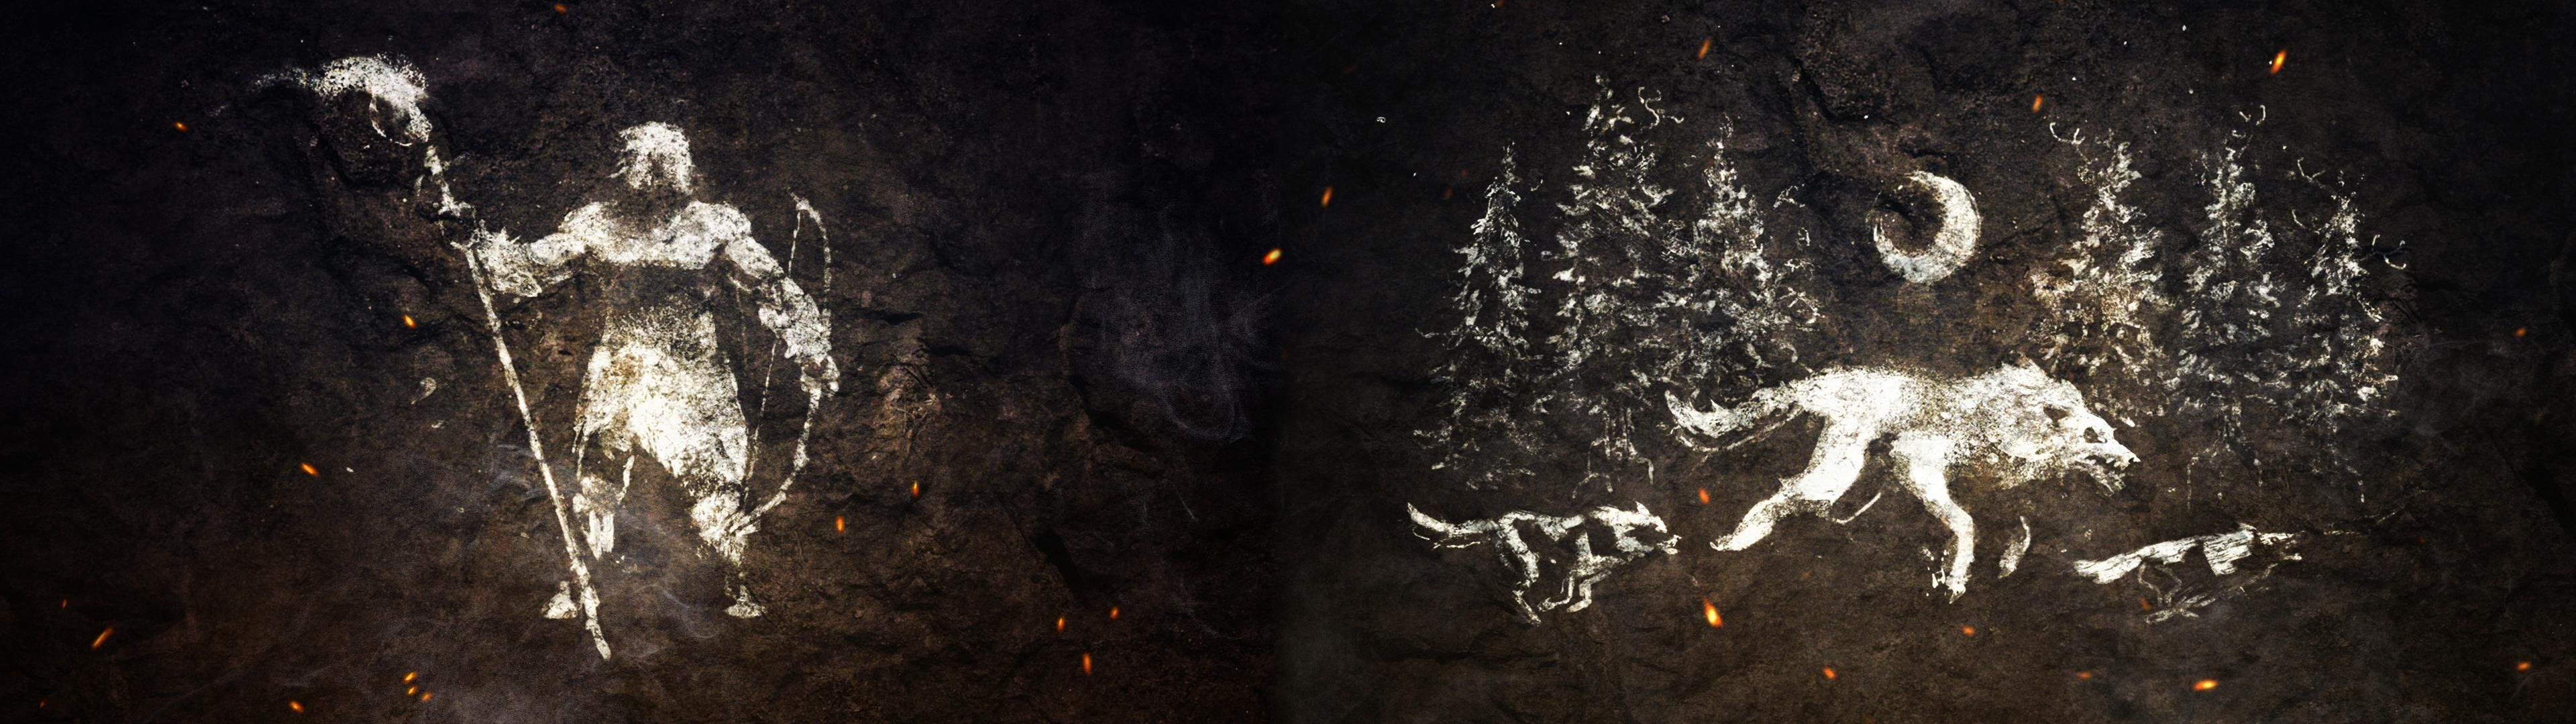 Dark Souls Dual Screen Wallpapers - Wallpaper Cave